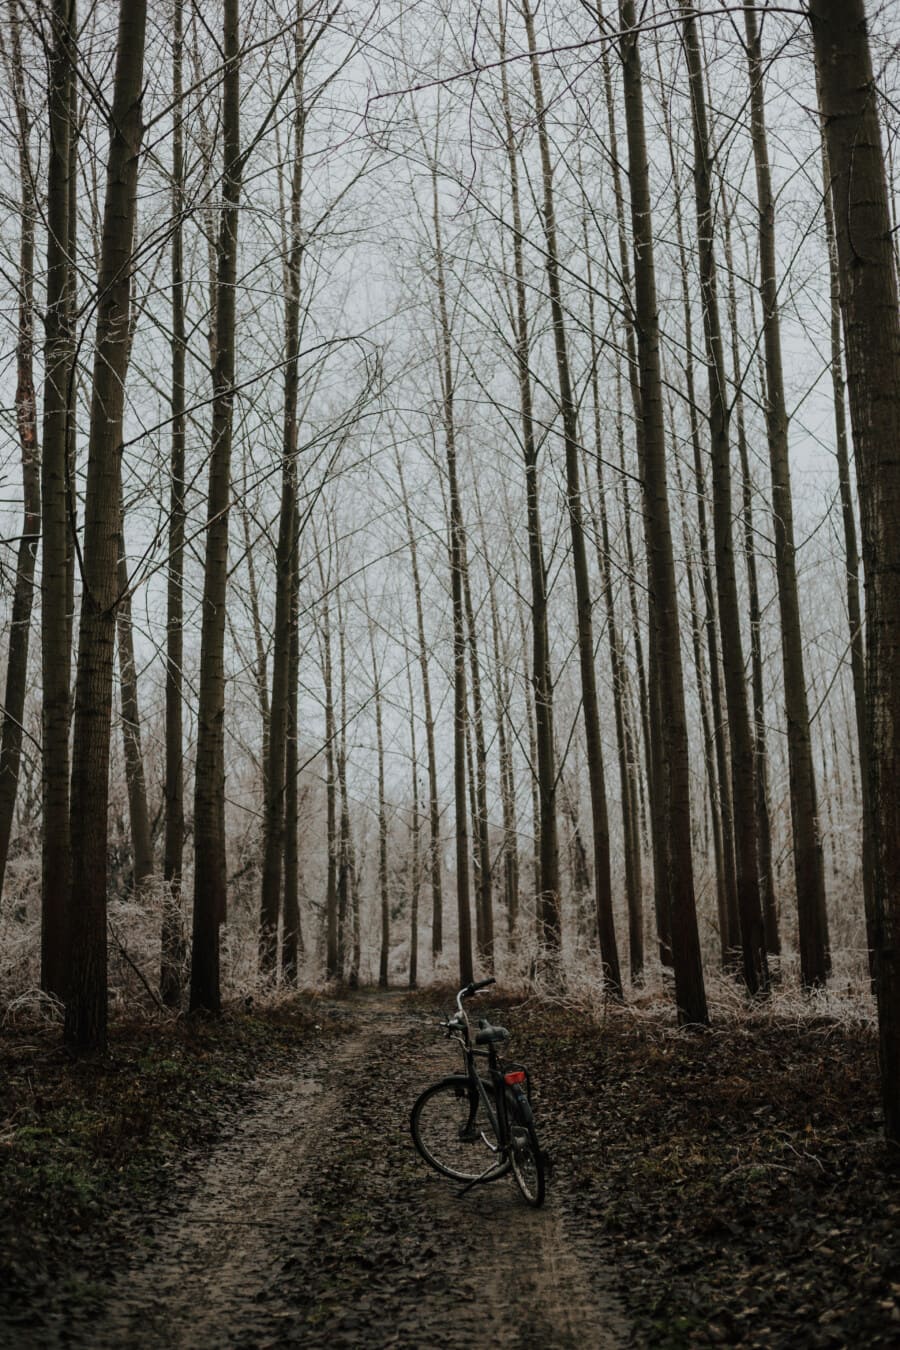 trilha da floresta, floresta, caminho da floresta, Inverno, bicicleta, frio, Ramos, congelado, árvores, Poplar